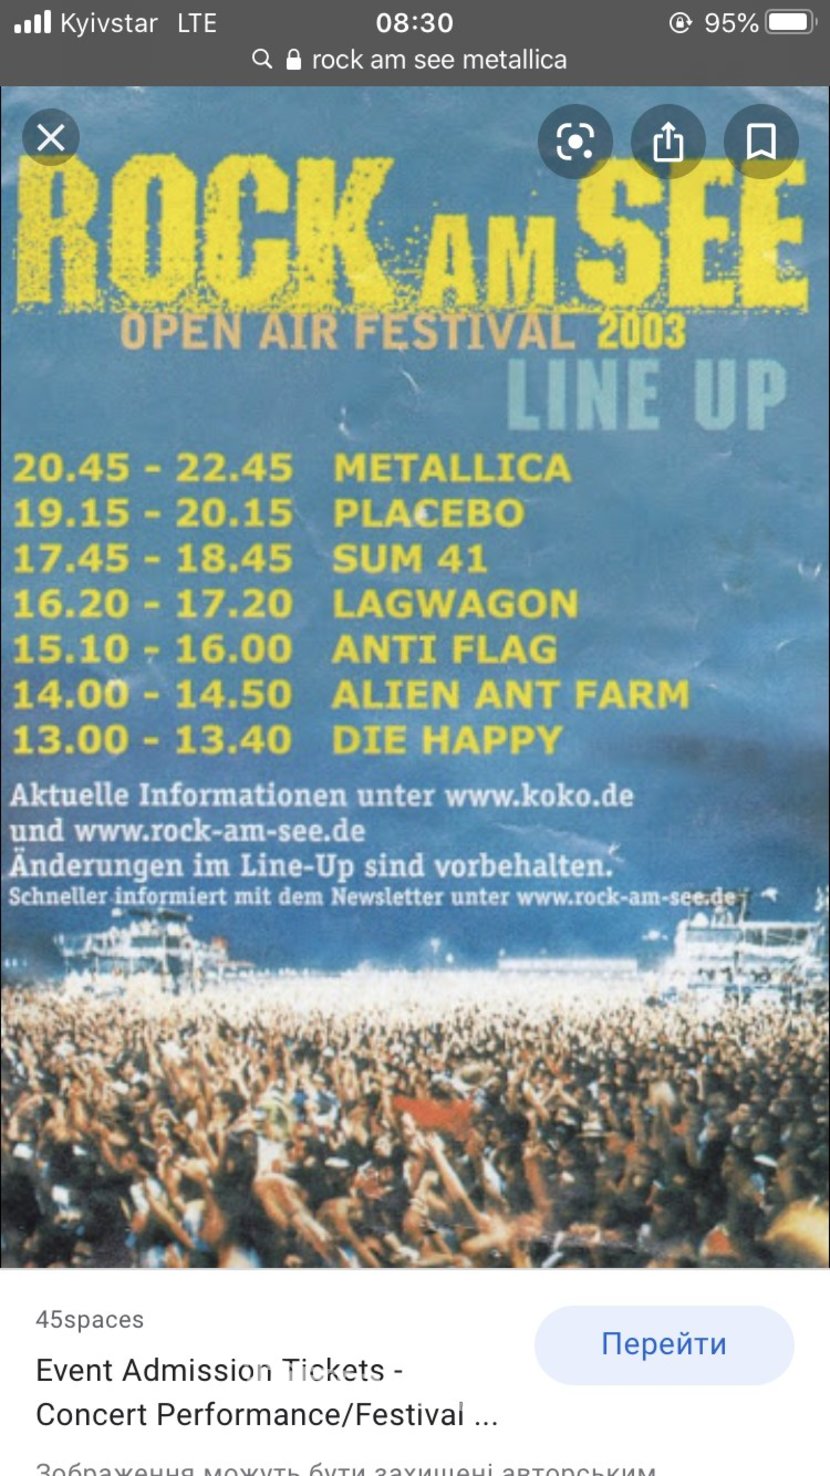 Metallica T-shirt festivals rock am see 2003